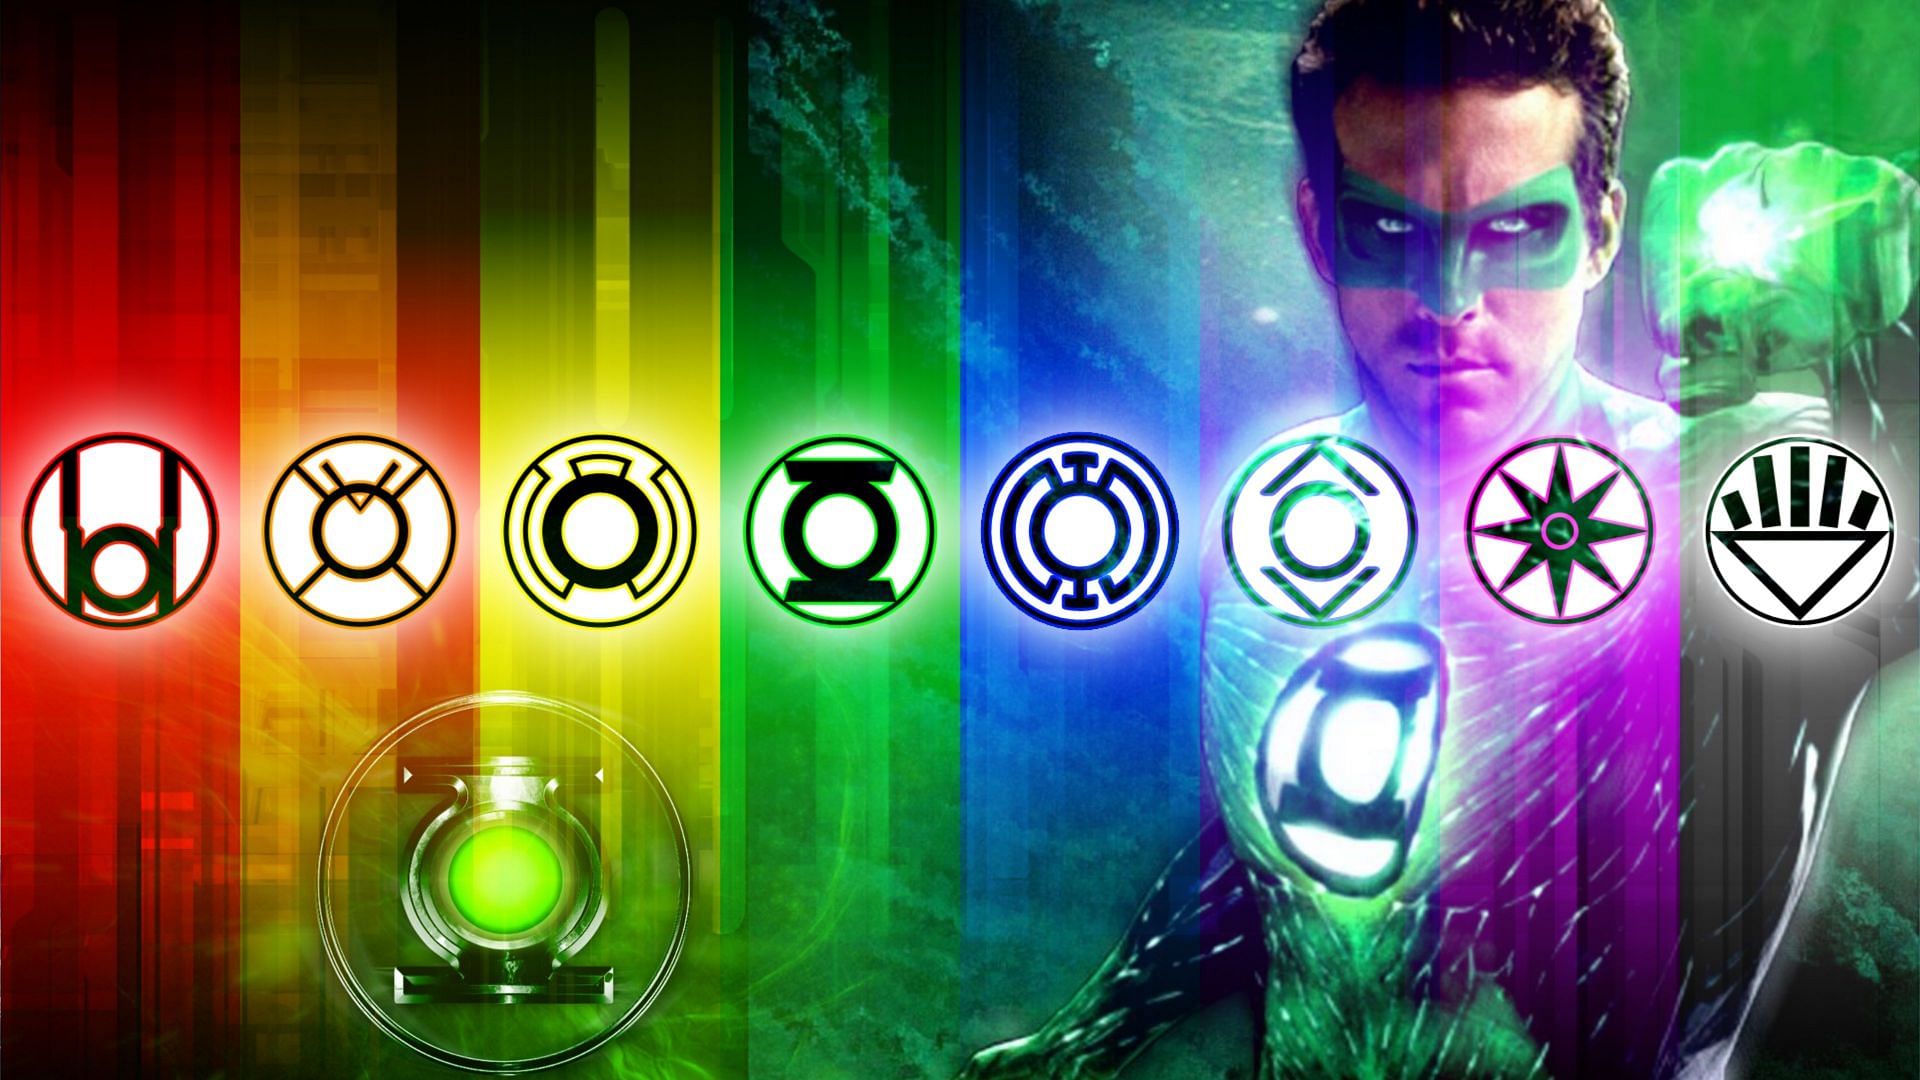 Hal Jordan was the Power Ring (Image via Sportskeeda)